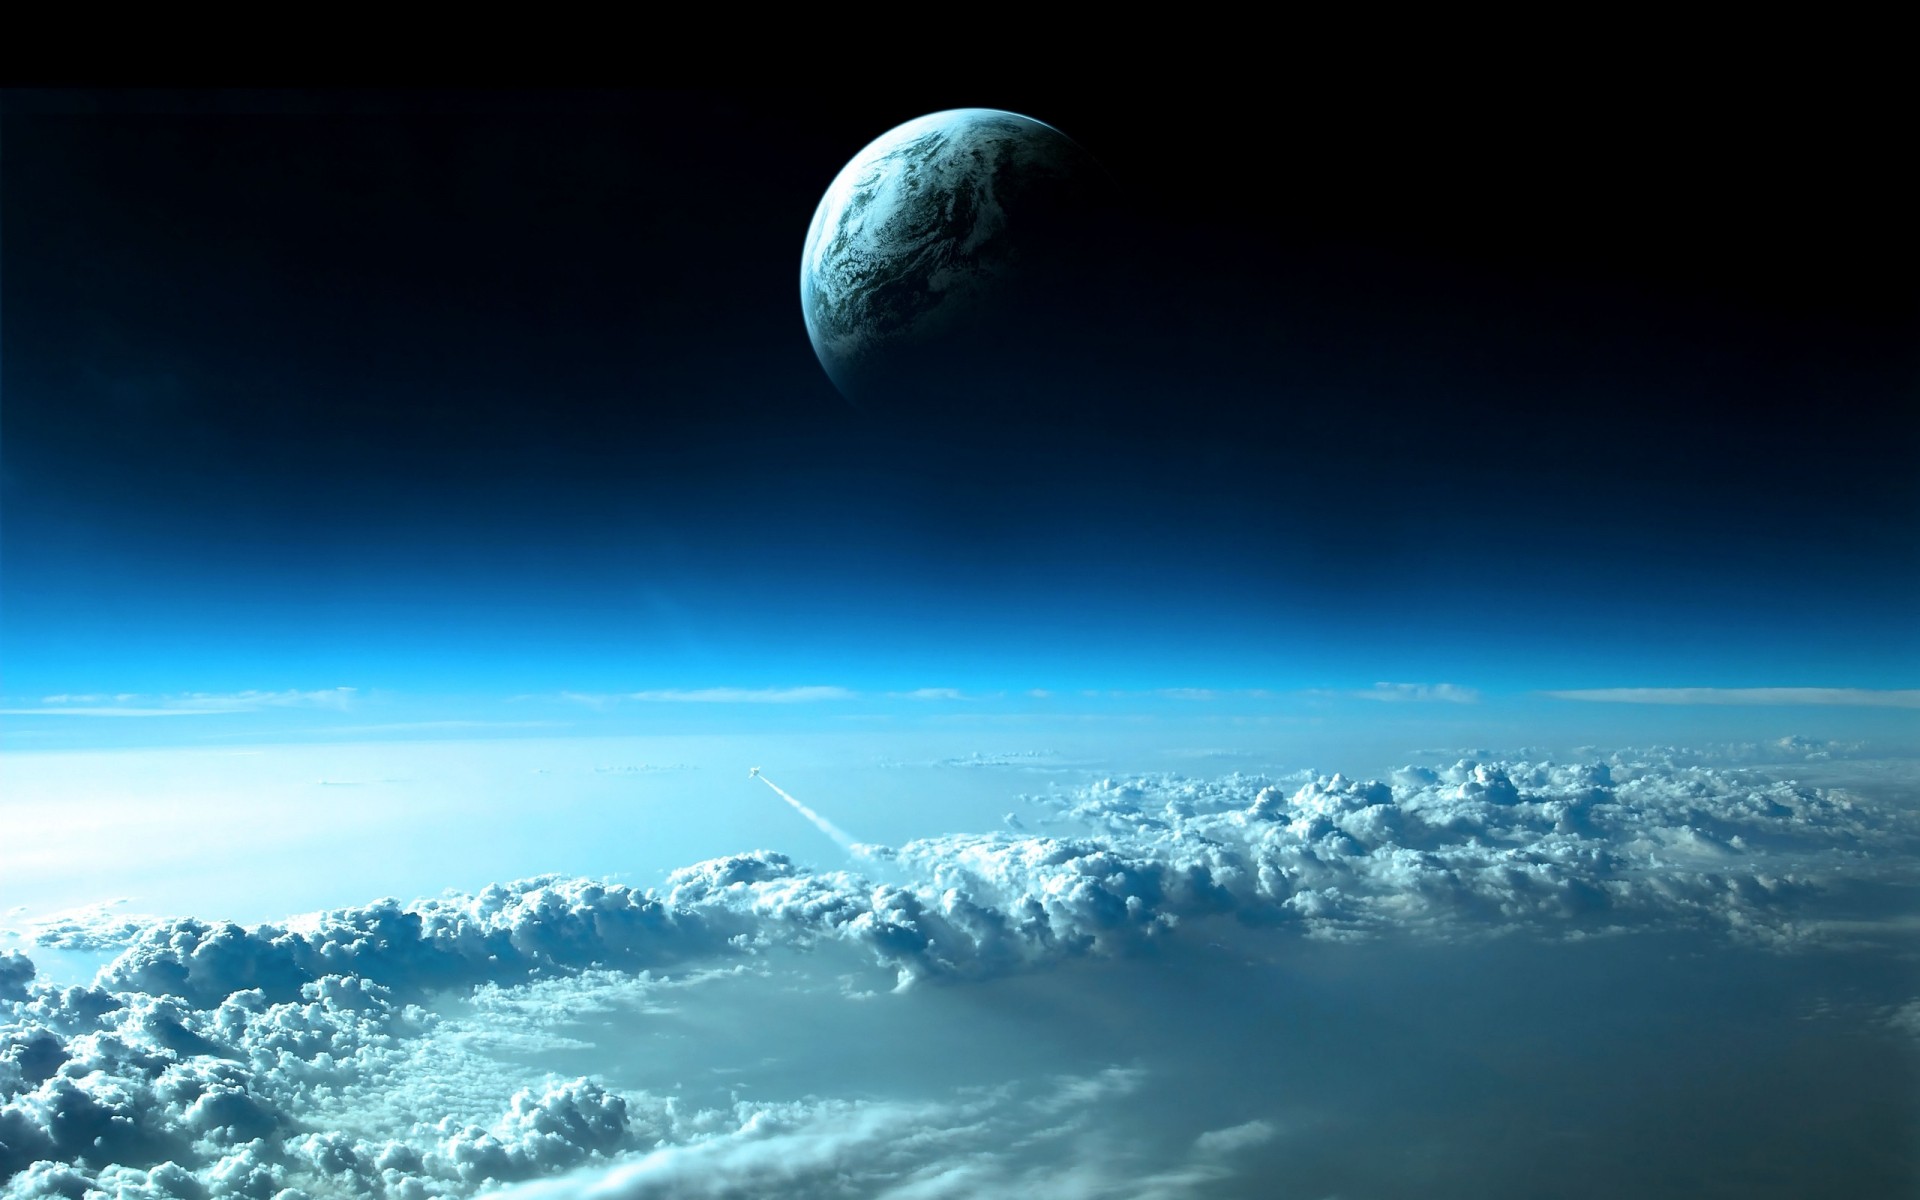 пейзажи луна небо пространство природа солнце на открытом воздухе атмосфера свет хорошую погоду астрономия планеты пейзаж небо путешествия